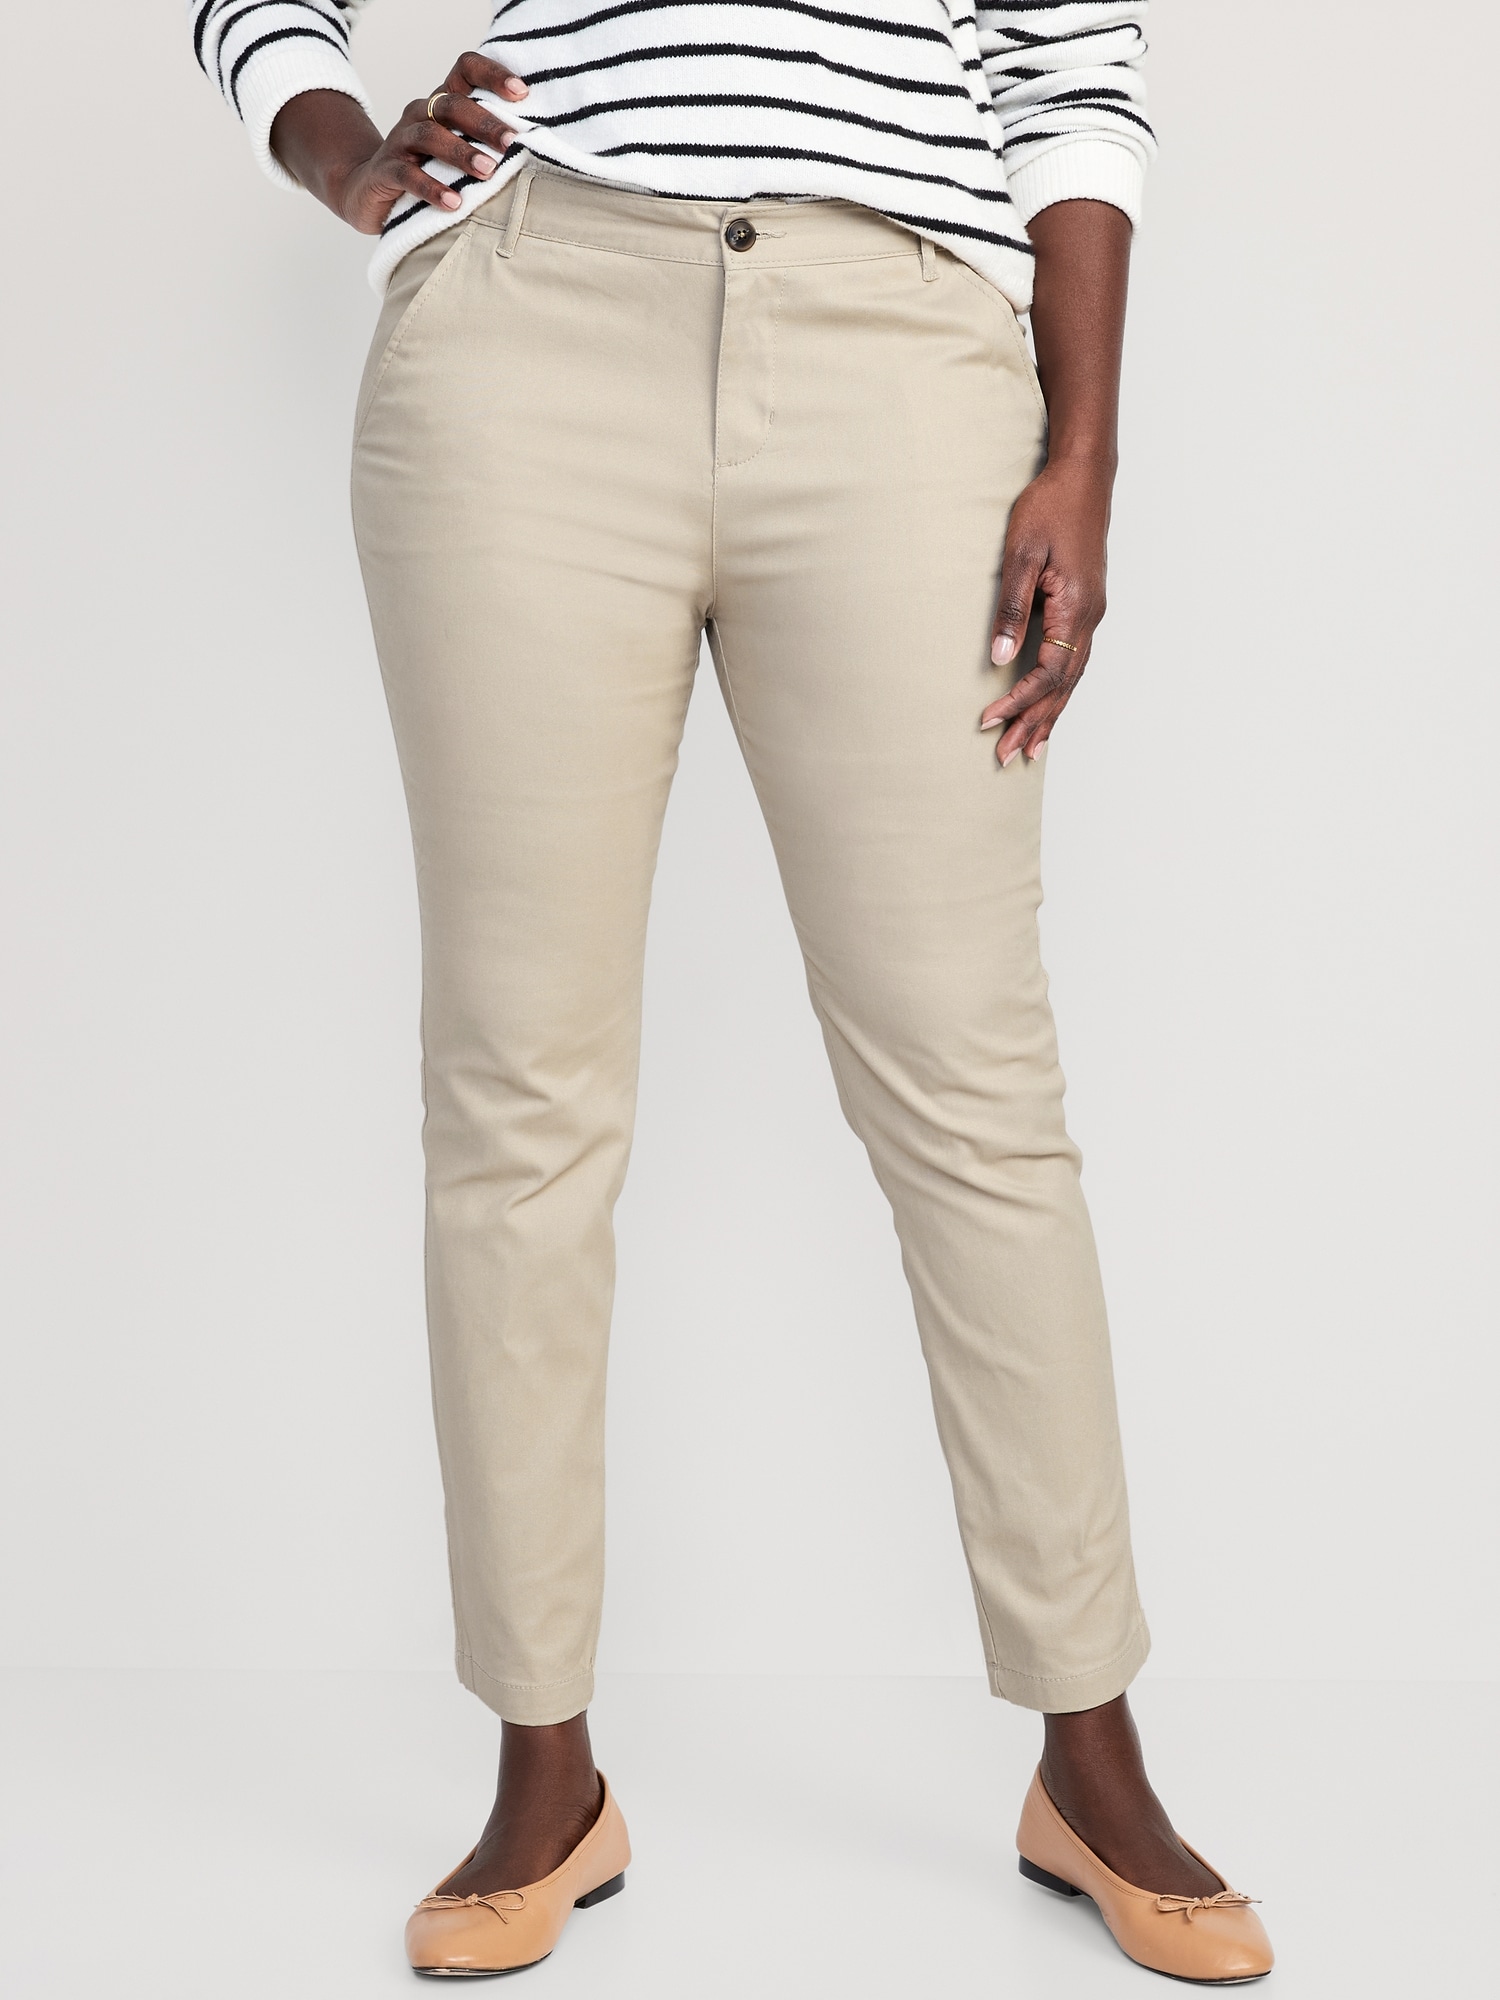 Smart looking GAP Dress Pants - Women's Size 12 Long